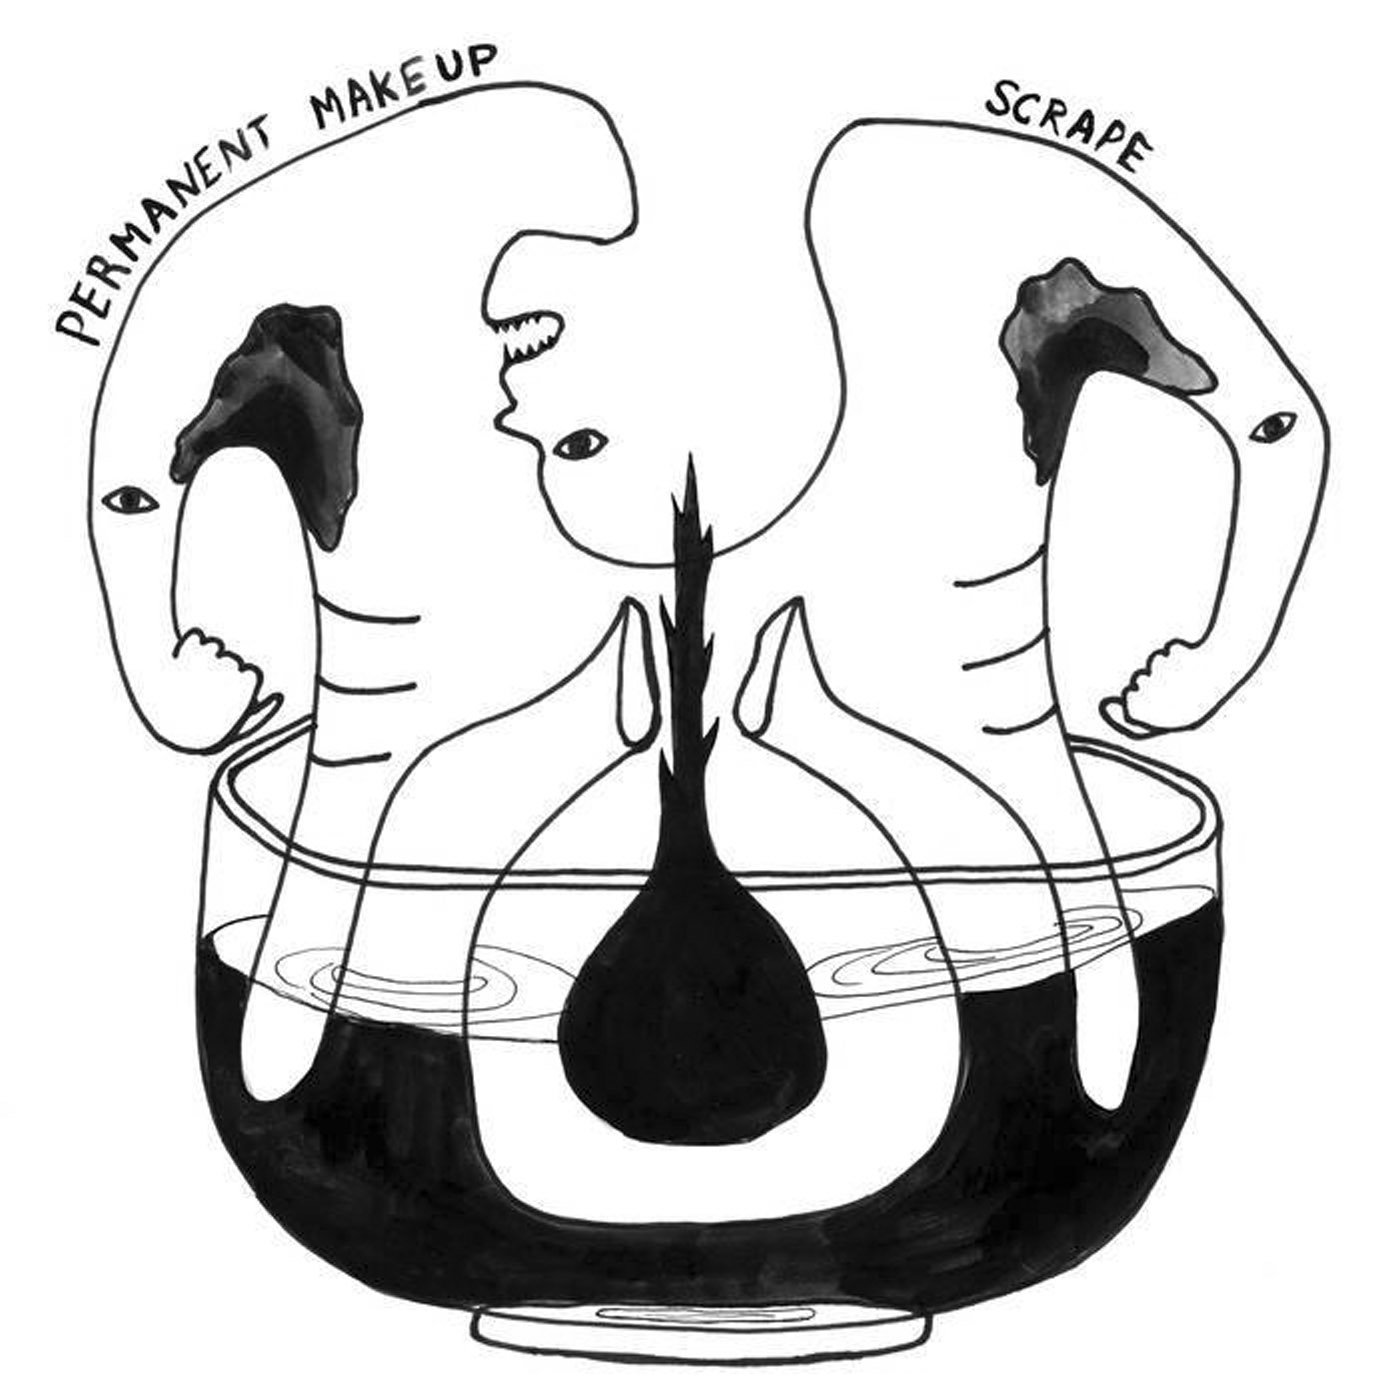 Permanent Makeup - Scrape LP - SOLD OUT